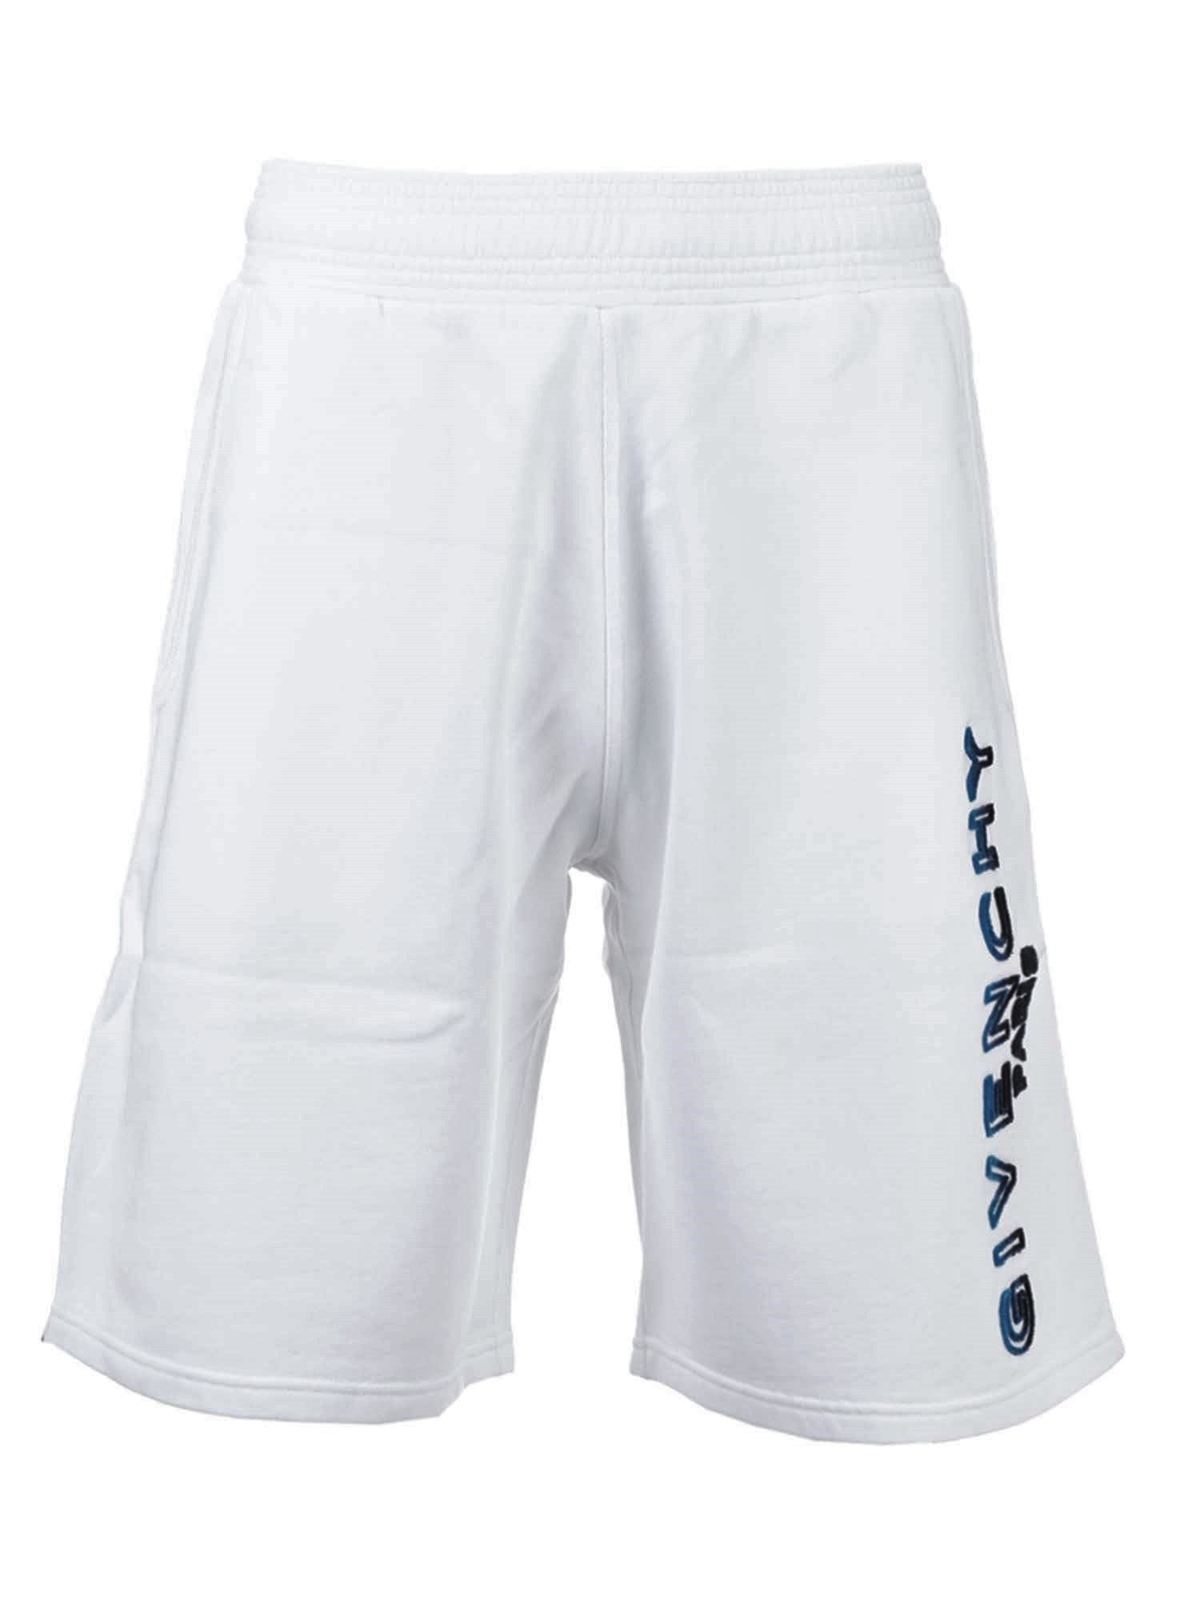 Givenchy - Logo shorts in white - shorts - BM50MT30AF114 | iKRIX.com